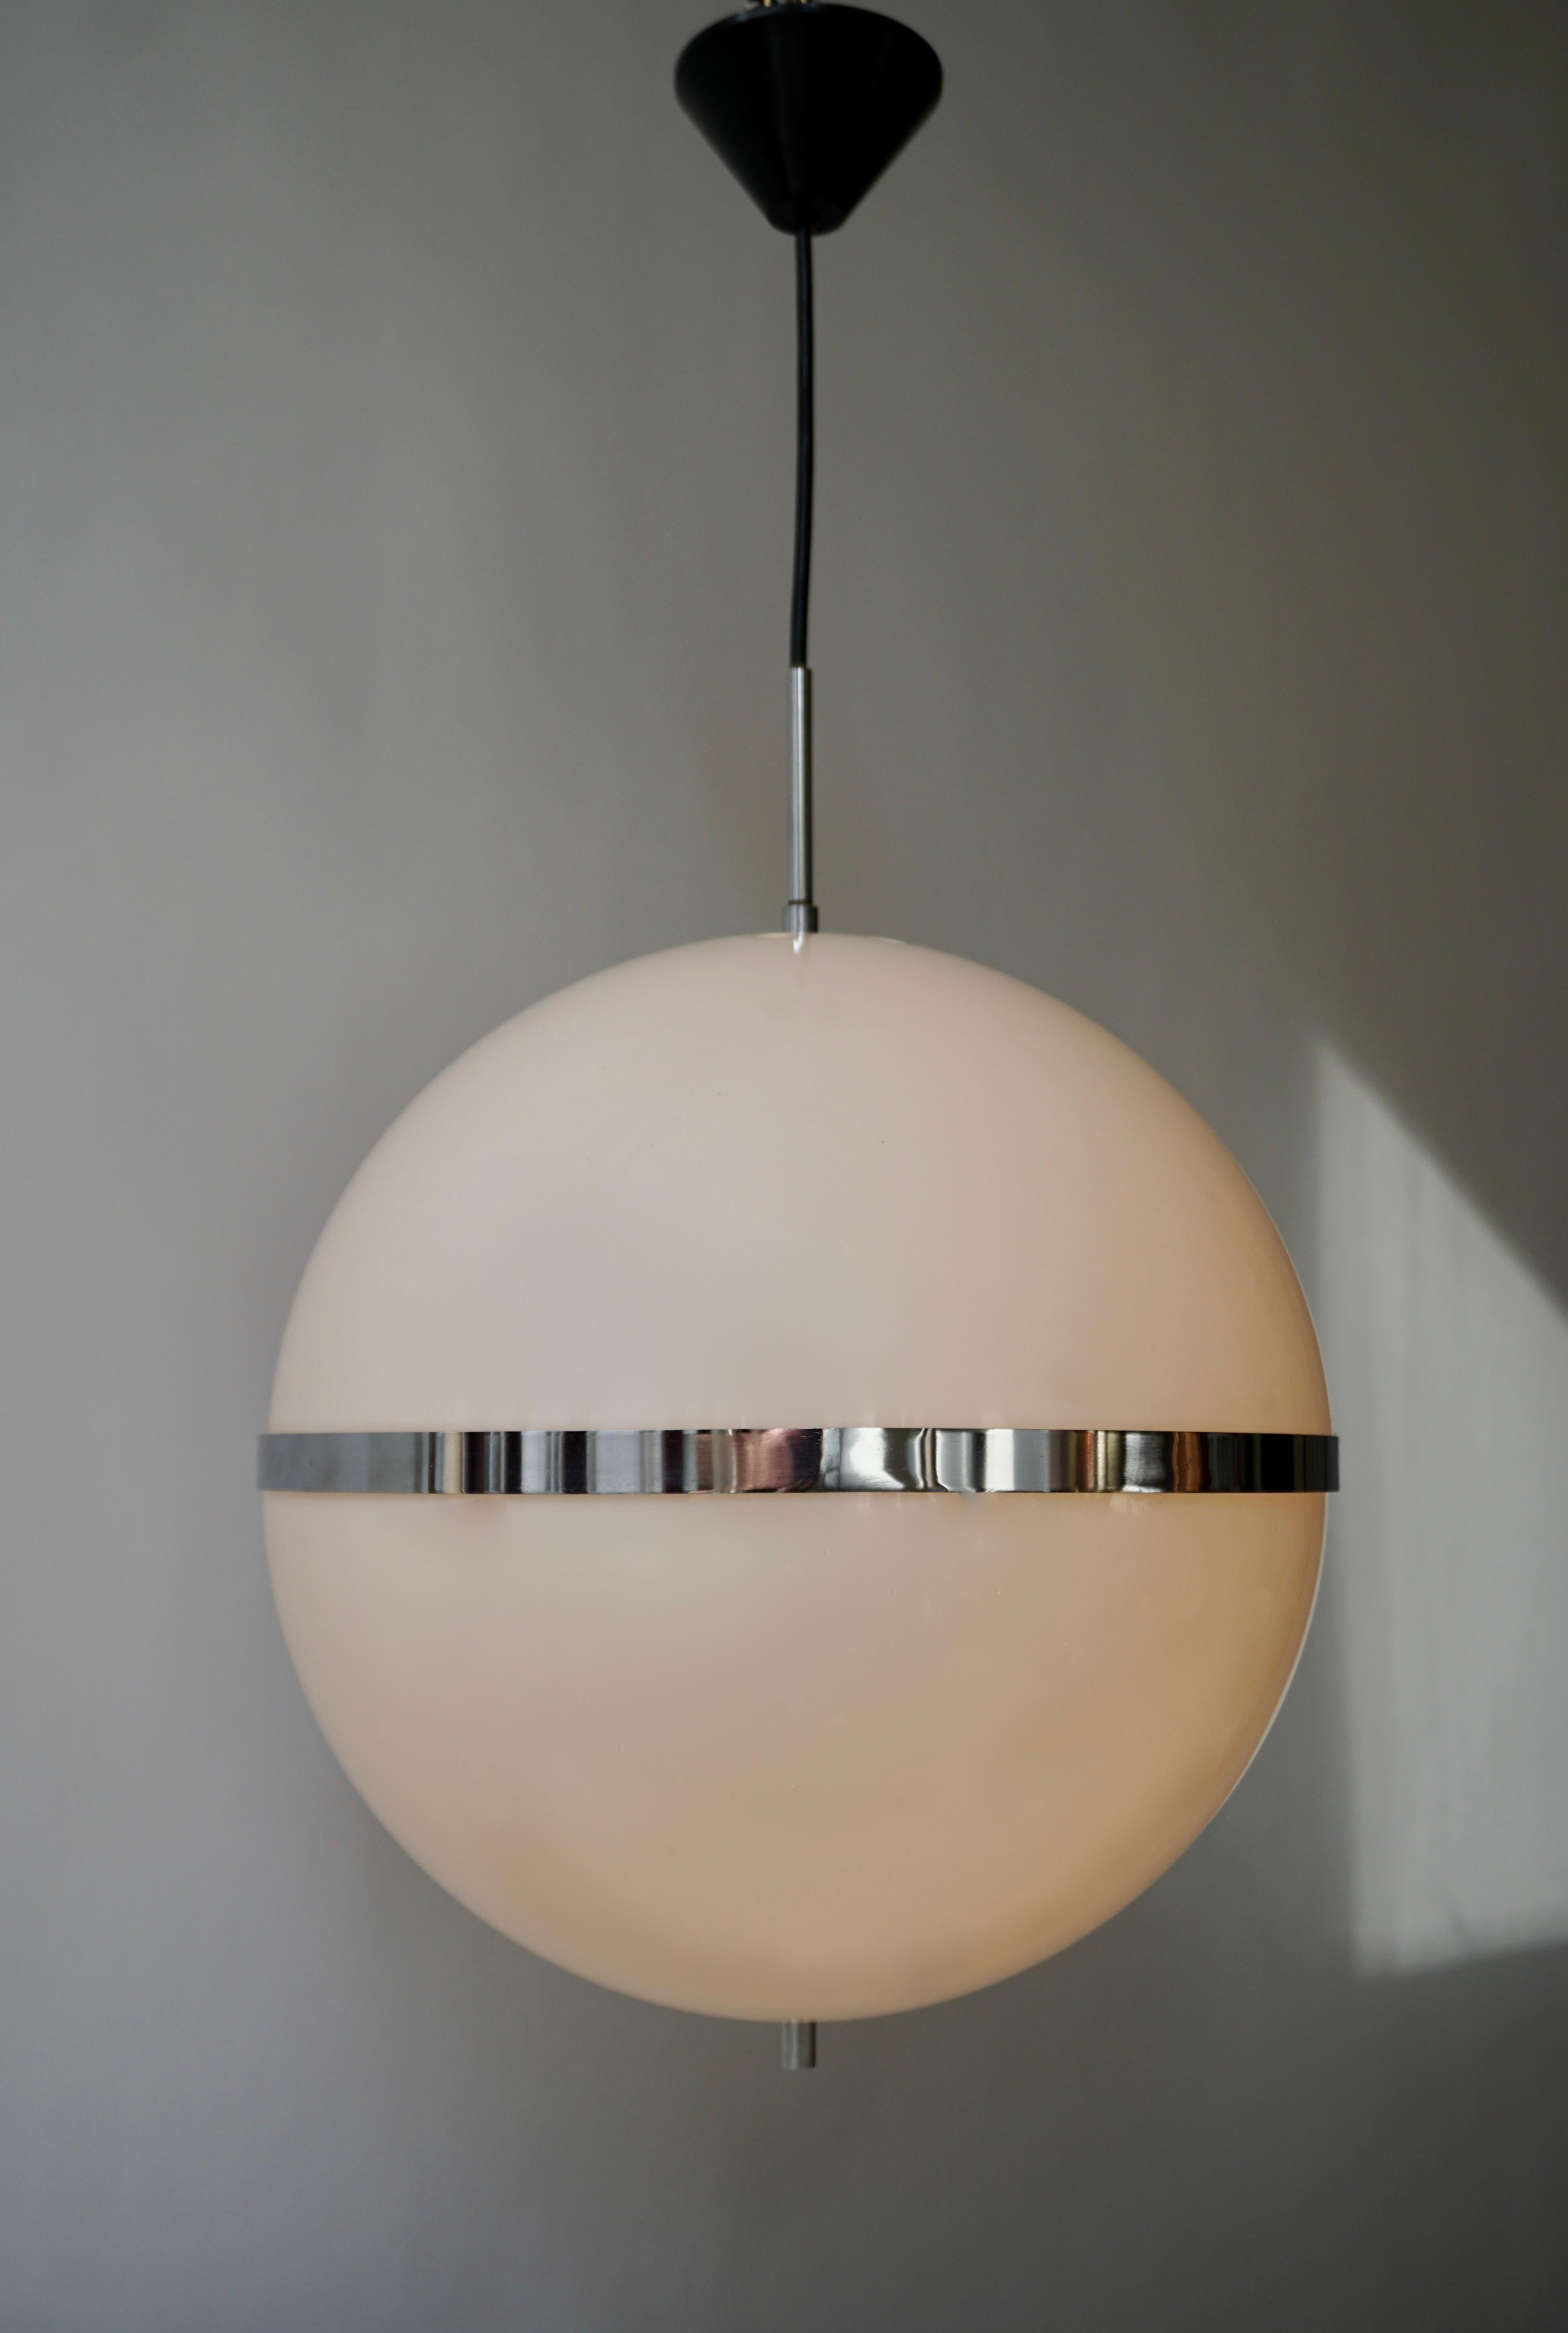 Seltene und große Pendelleuchte im Stil von Harvey Guzzini, Italien, 1960er-1970er Jahre. Die Leuchte besteht aus einem großen kugelförmigen Schirm aus milchig weißem Kunststoff. Diese beiden Teile werden durch schöne verchromte Metalldetails